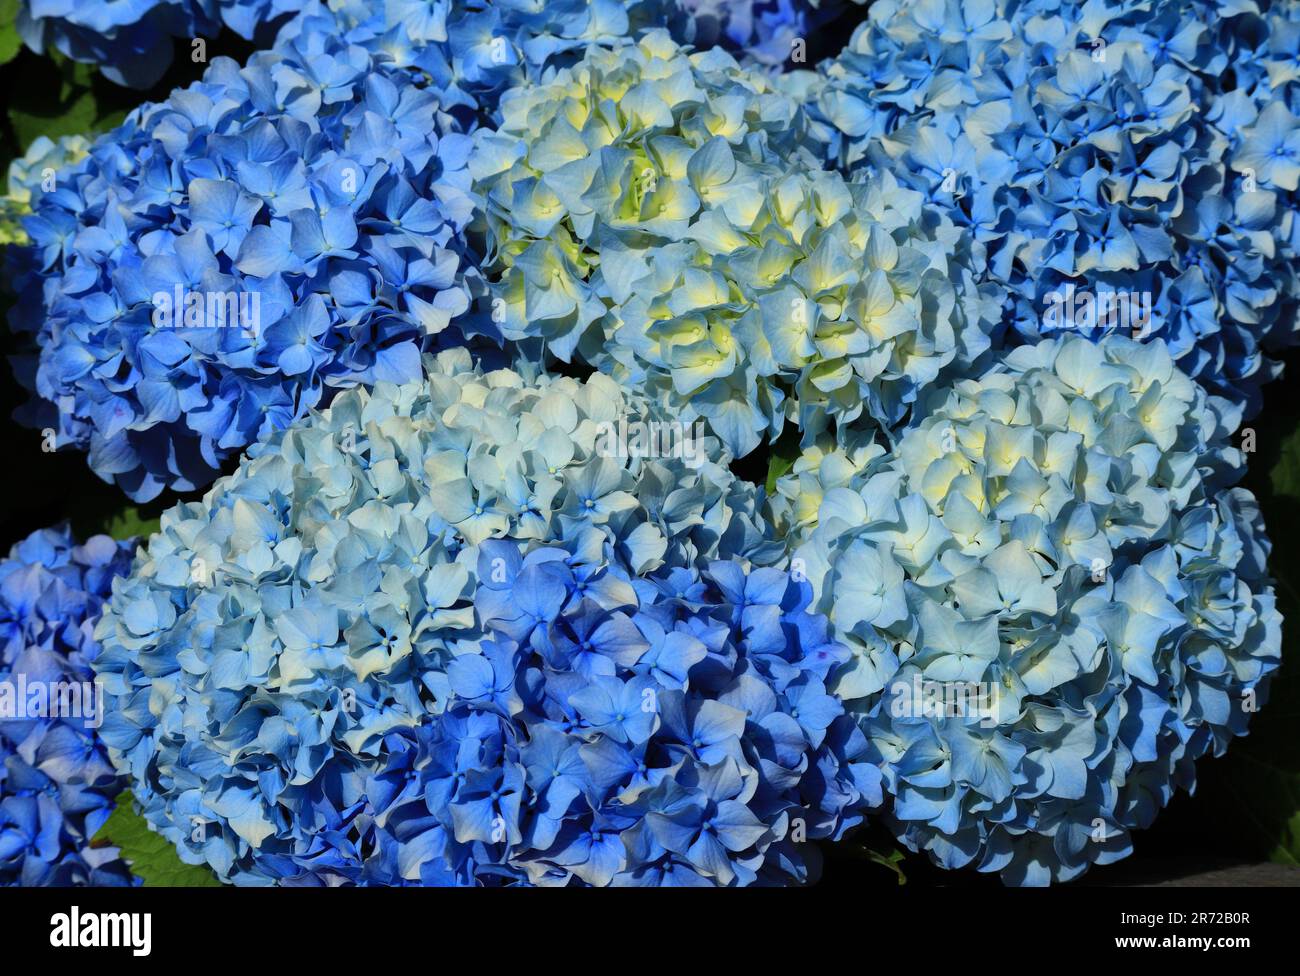 Hydrangea blu o Hortensia - Hydrangea macrophylla cespuglio in fiore, Sintra, Lisbona Portogallo. Primavera. Introdotto dalle isole Azzorre portoghesi. Foto Stock